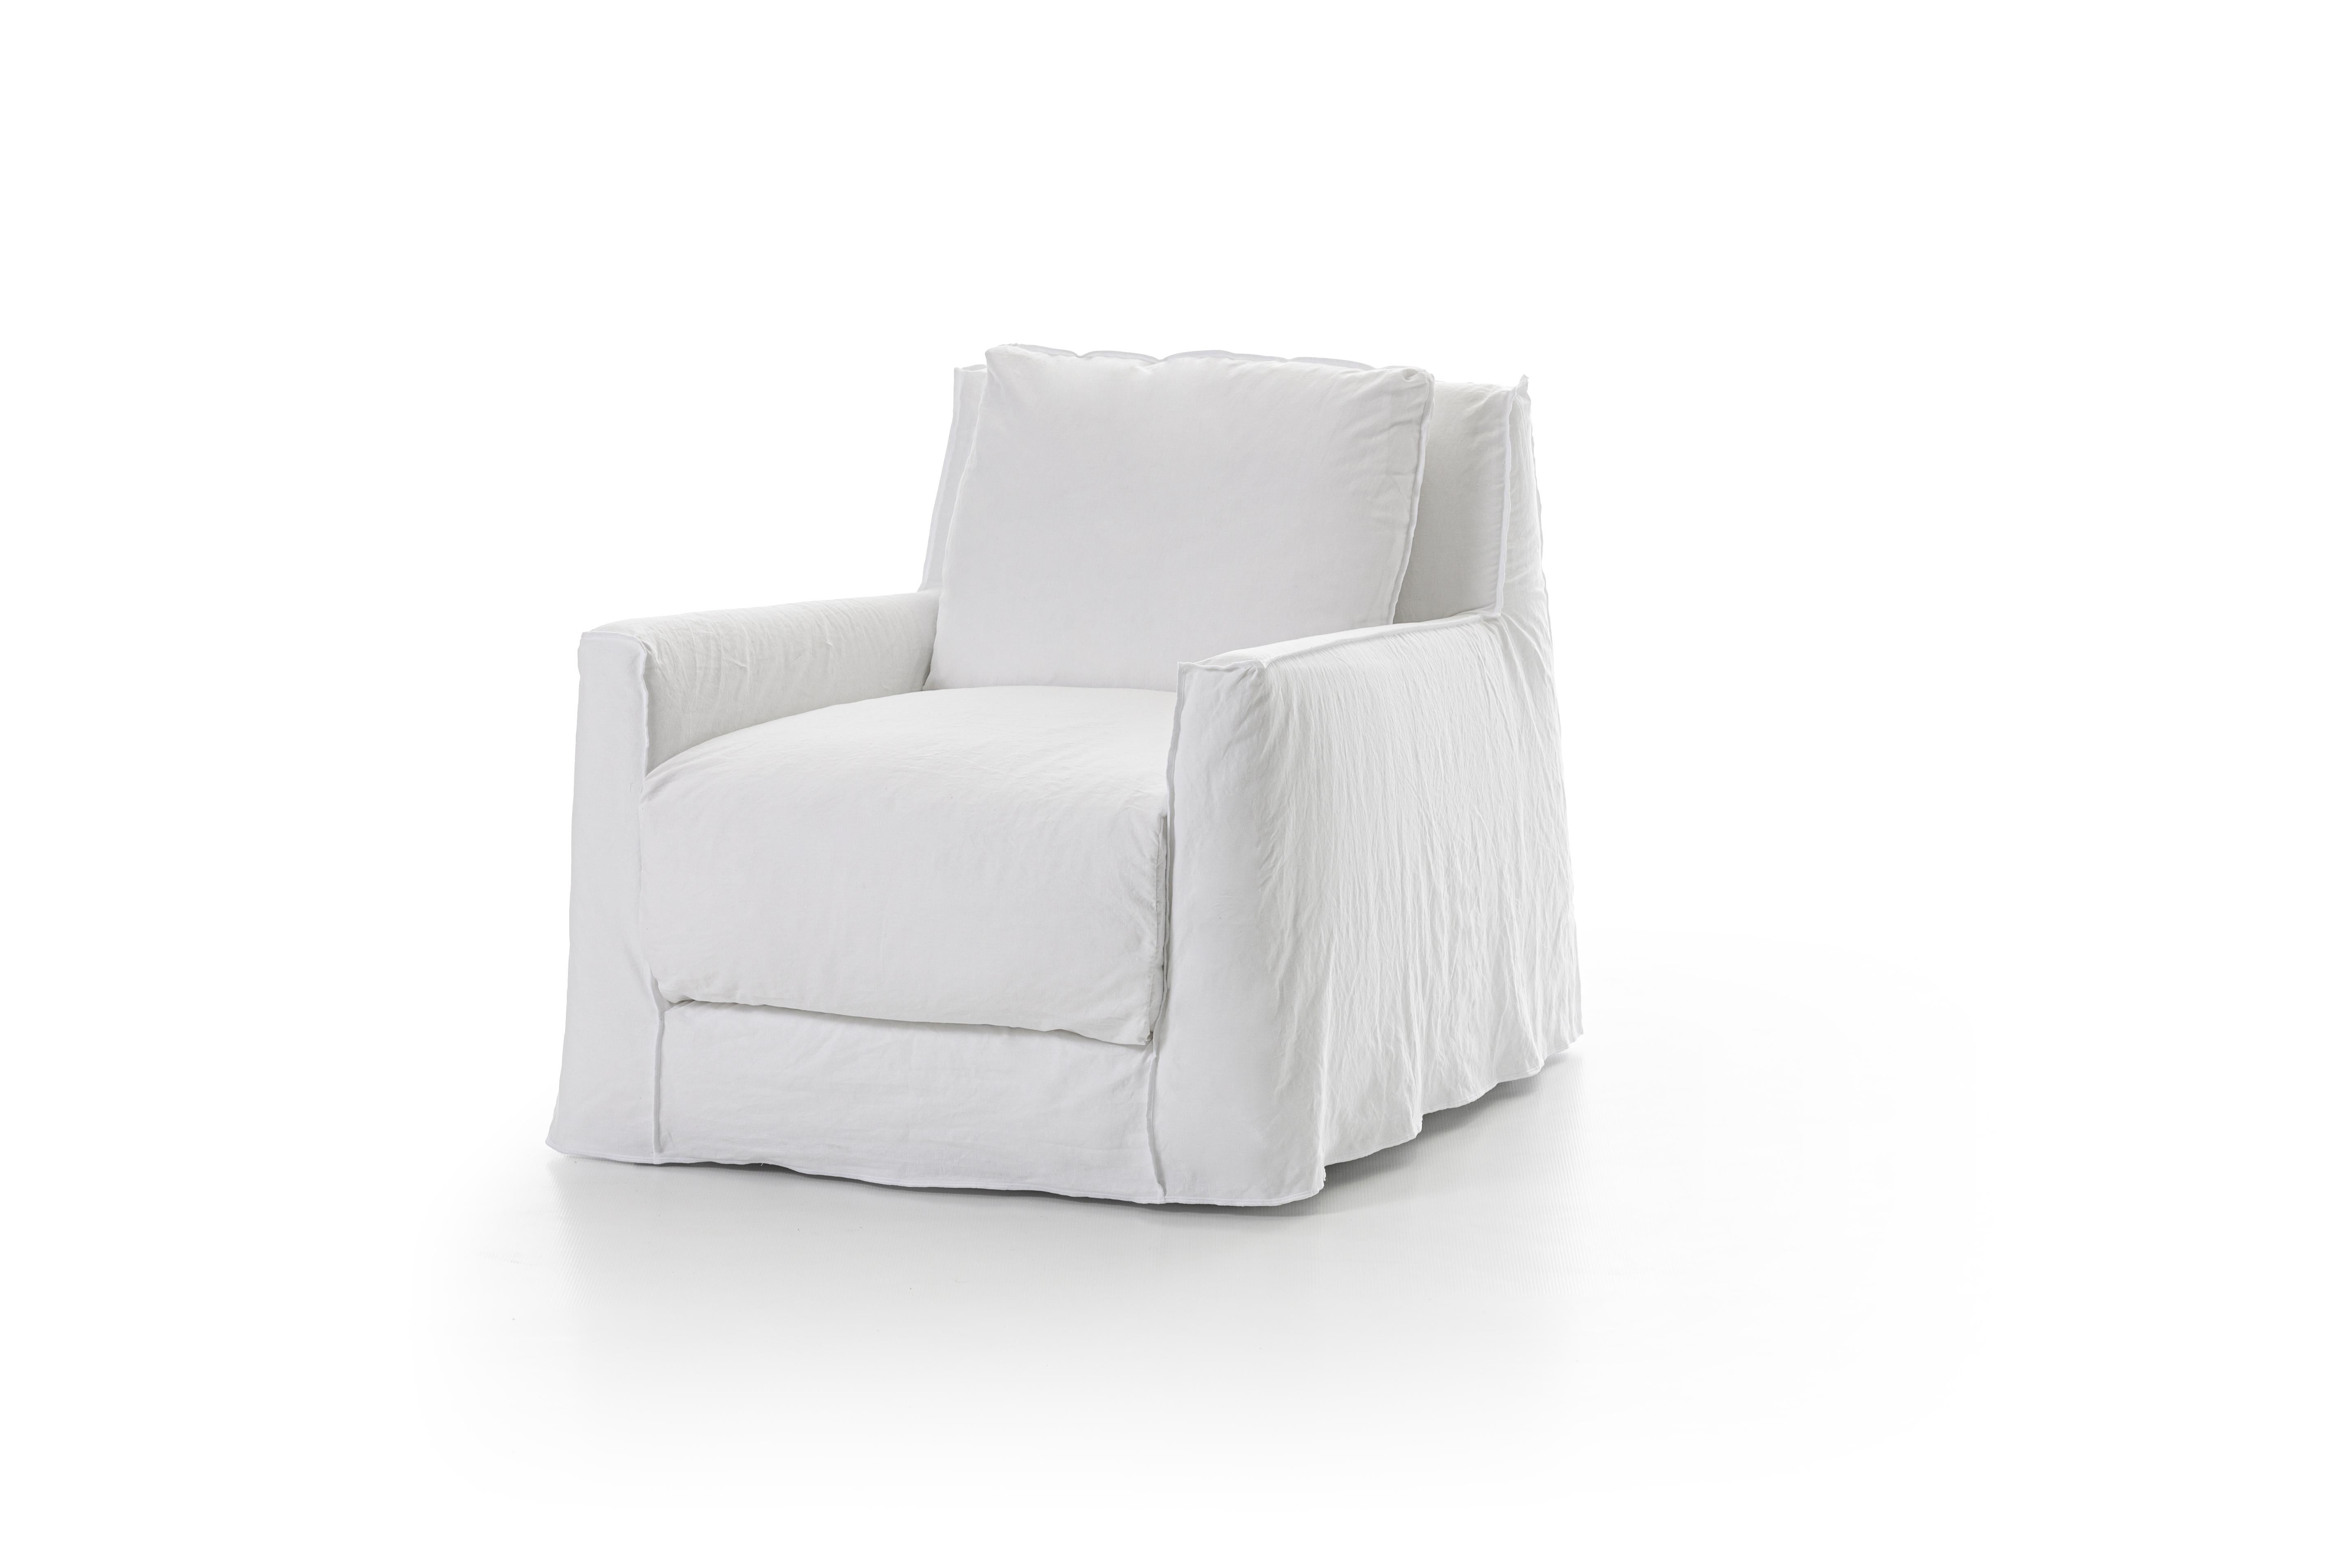 Une idée du confort contemporain est racontée par la famille de fauteuils LOLL 01/05 avec une structure en bois massif recouverte de mousse polyuréthane haute densité. Des lignes douces et des géométries essentielles caractérisent ces fauteuils à